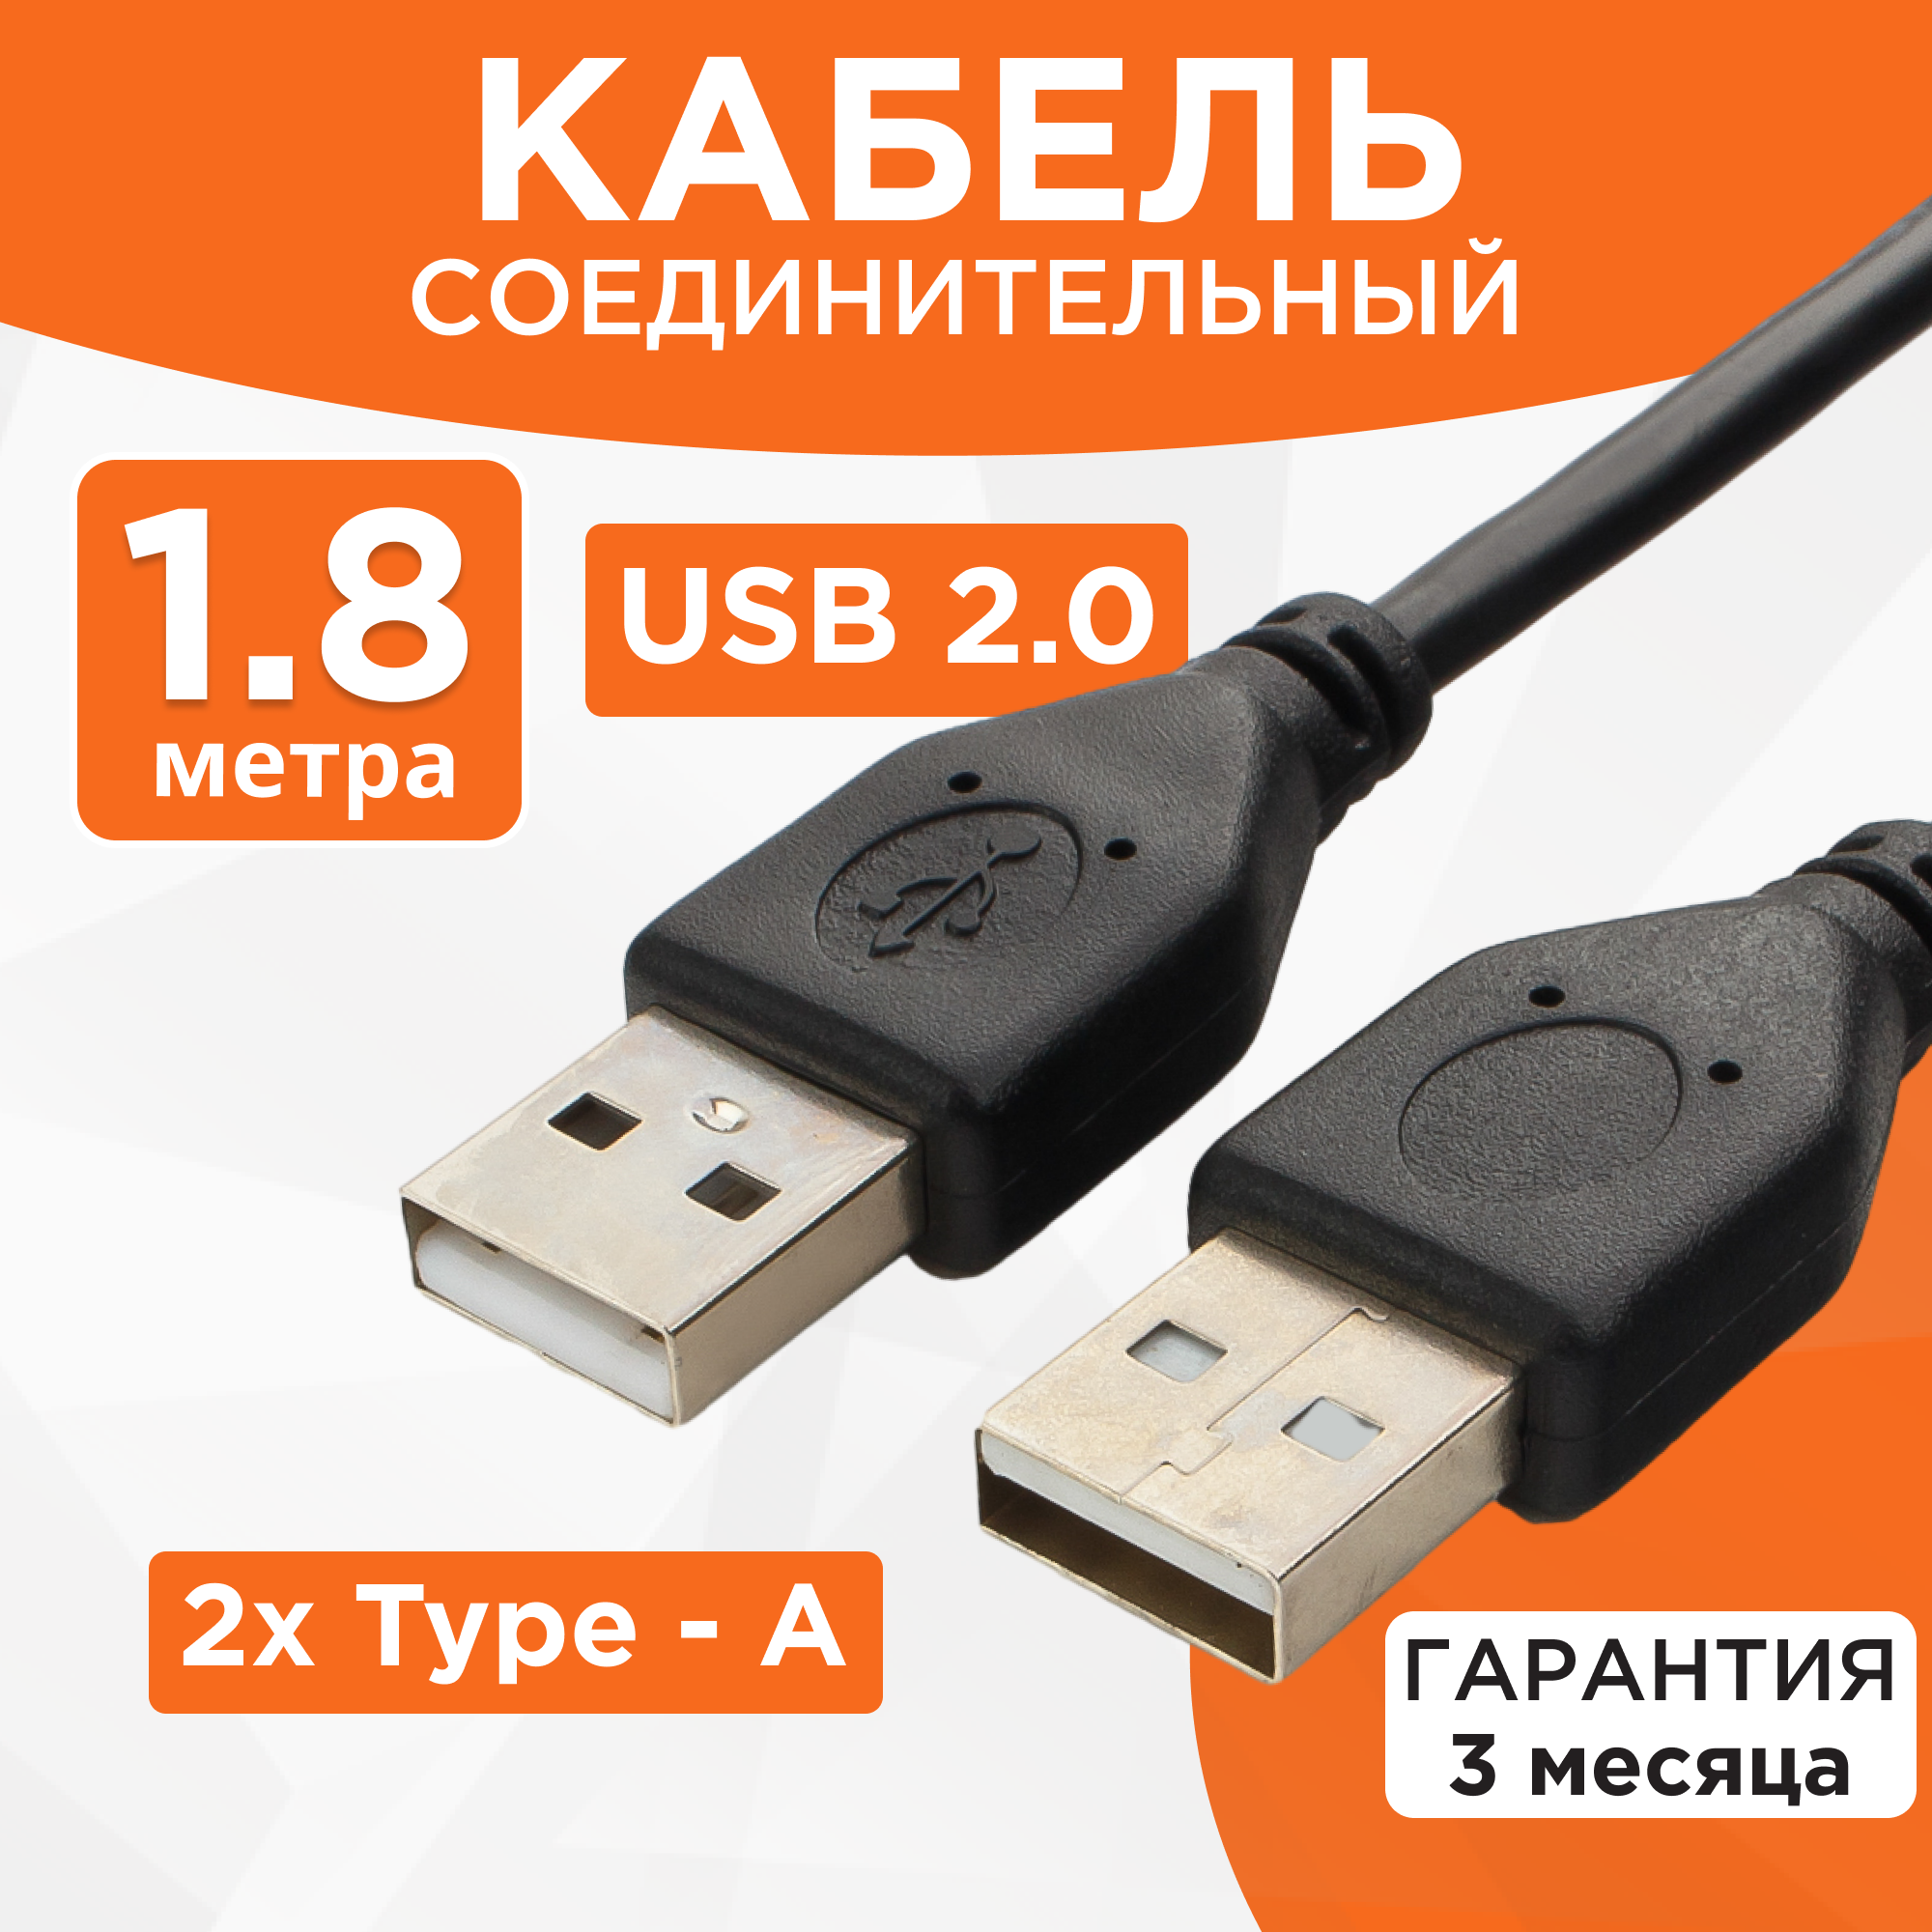 Кабель Cablexpert CCP-USB2-AMAM-6 USB-A (male)-USB-A (male) USB 2.0 1.8м чёрный